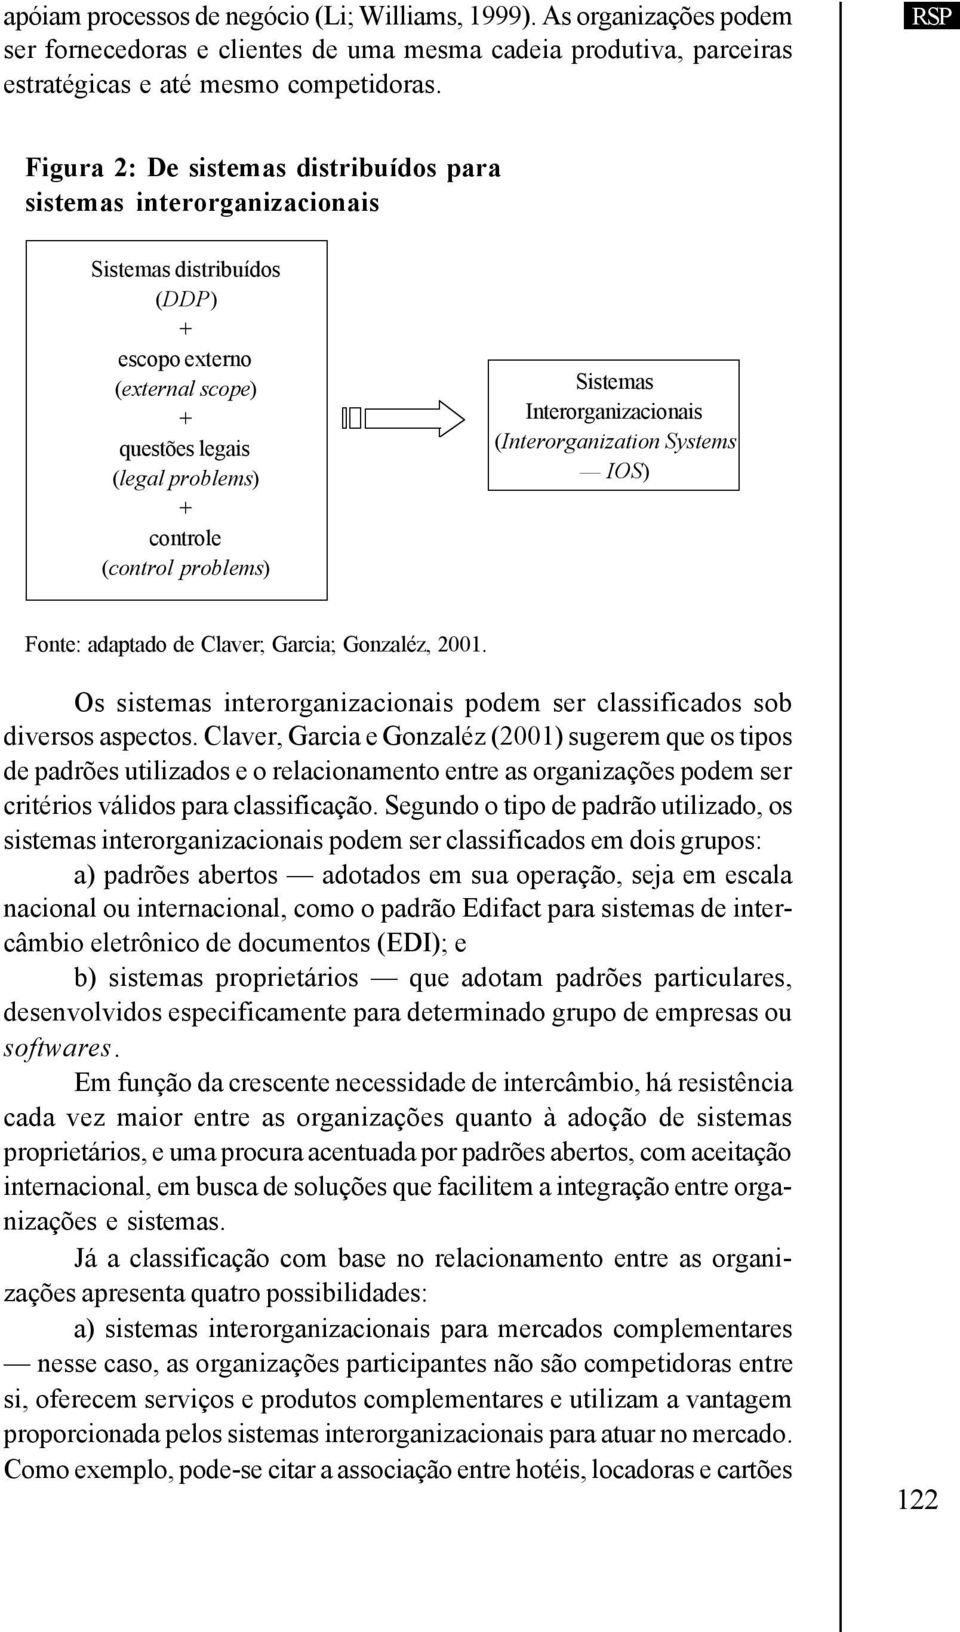 Sistemas Interorganizacionais (Interorganization Systems IOS) Fonte: adaptado de Claver; Garcia; Gonzaléz, 2001. Os sistemas interorganizacionais podem ser classificados sob diversos aspectos.